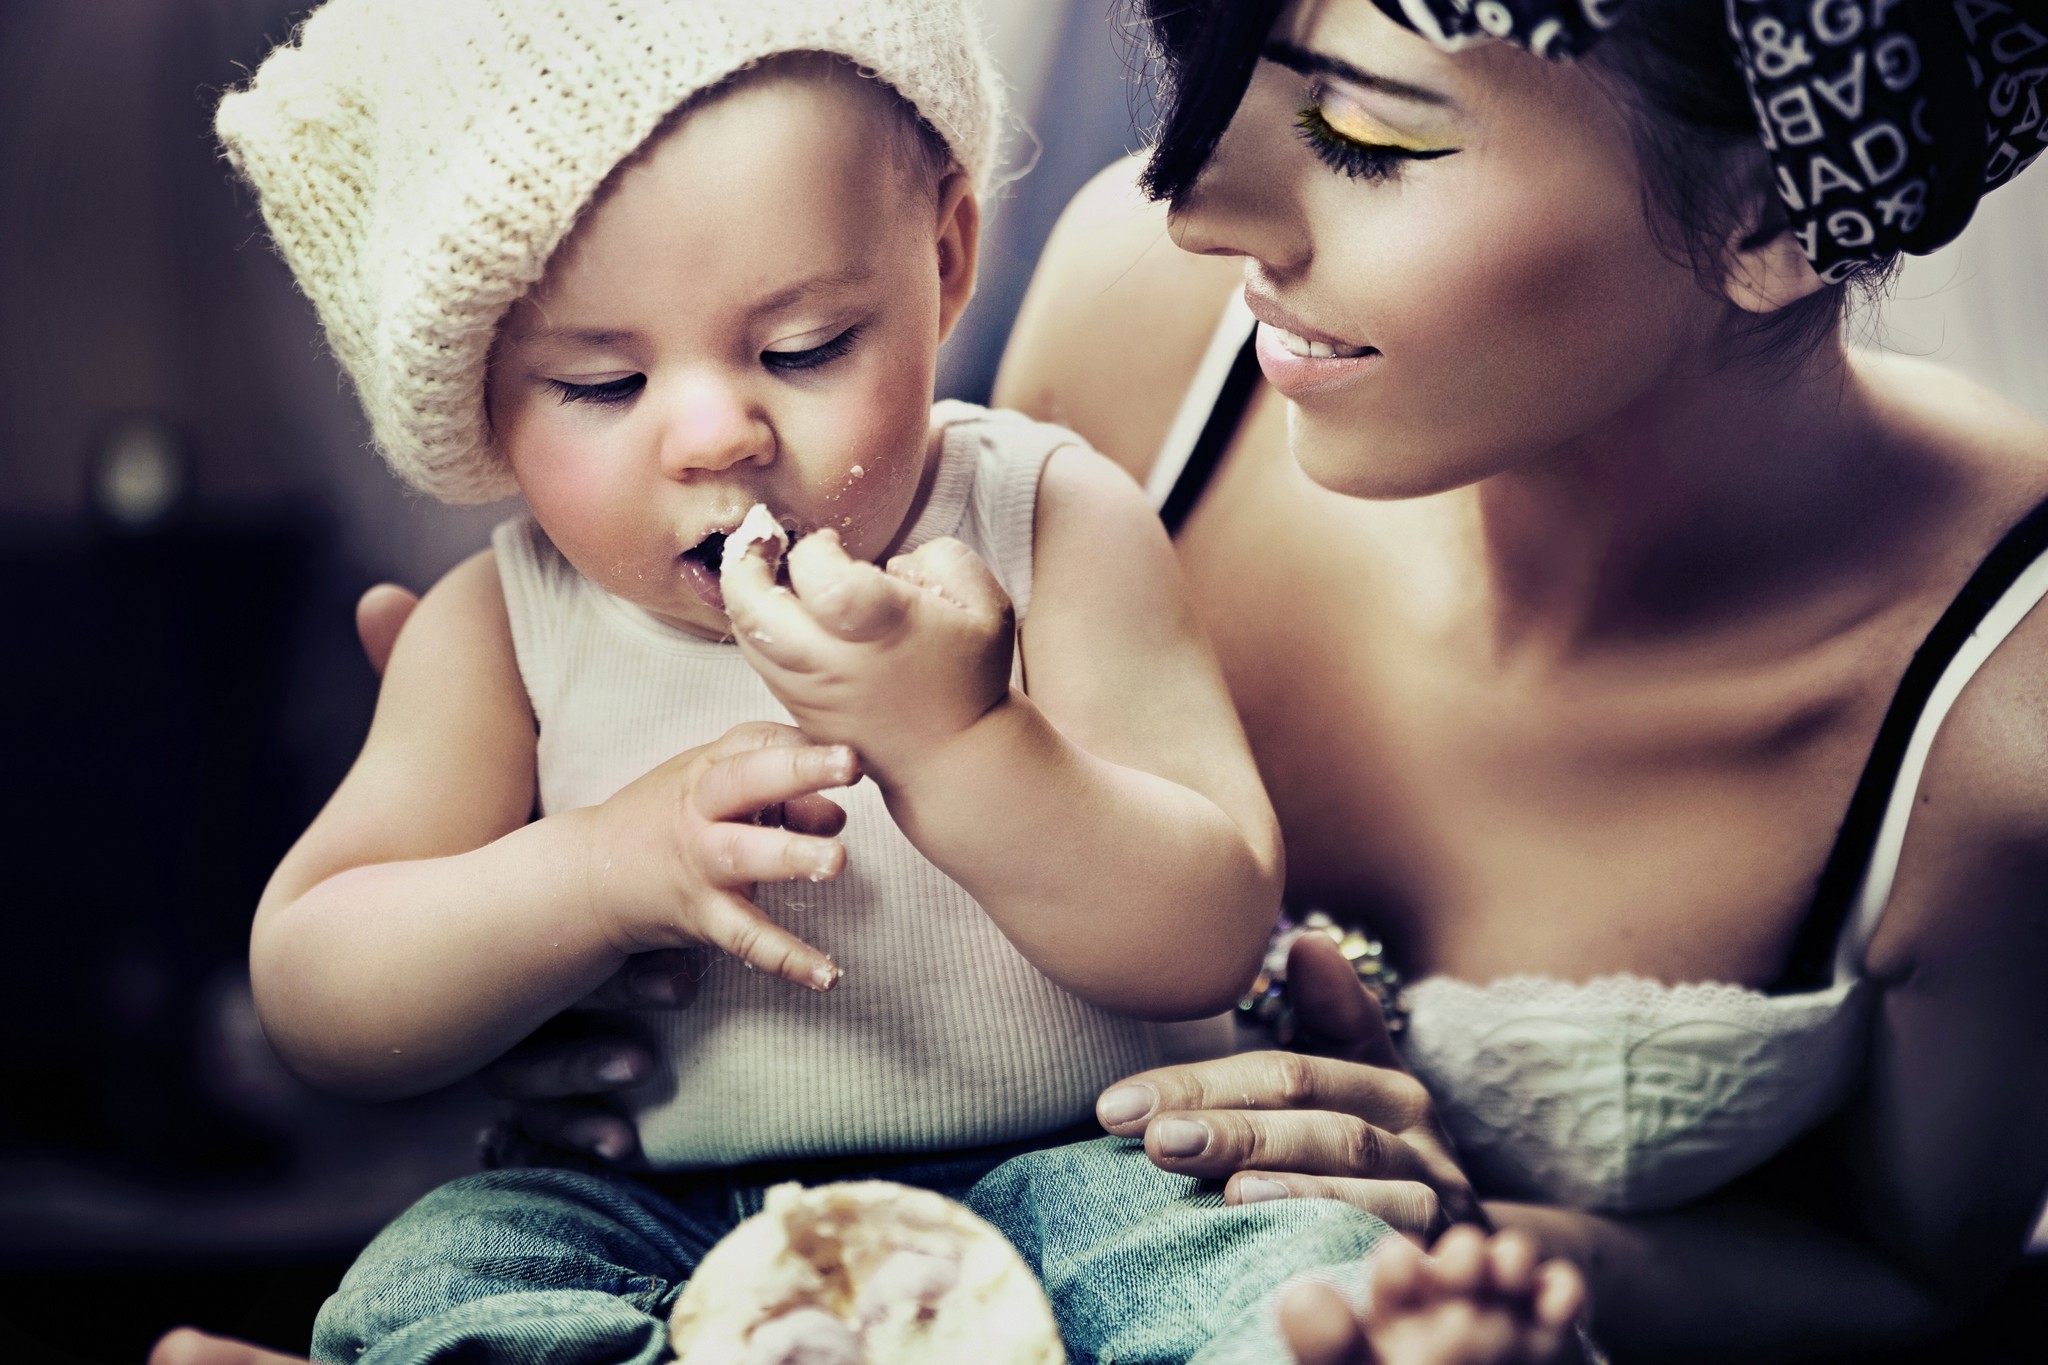 A glutén és a tej nem ellenség, de kisbabád egészsége múlik azon, hogy mit teszel a tányérjára